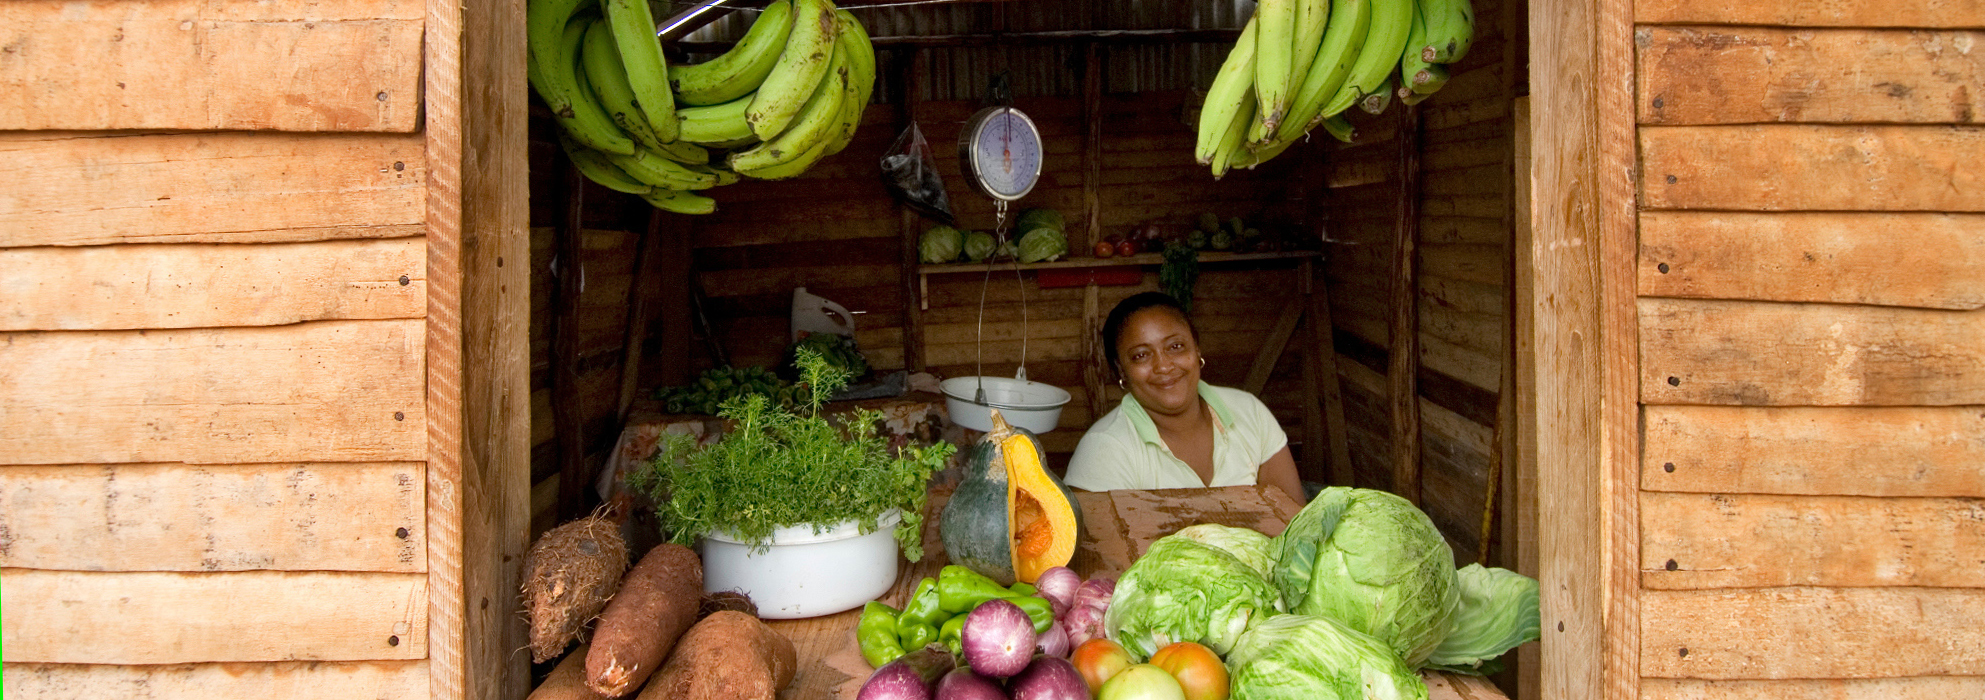 Verkaufsstand mit Obst und Gemüse nahe Las Galeras in Samana, Dominikanische Republik